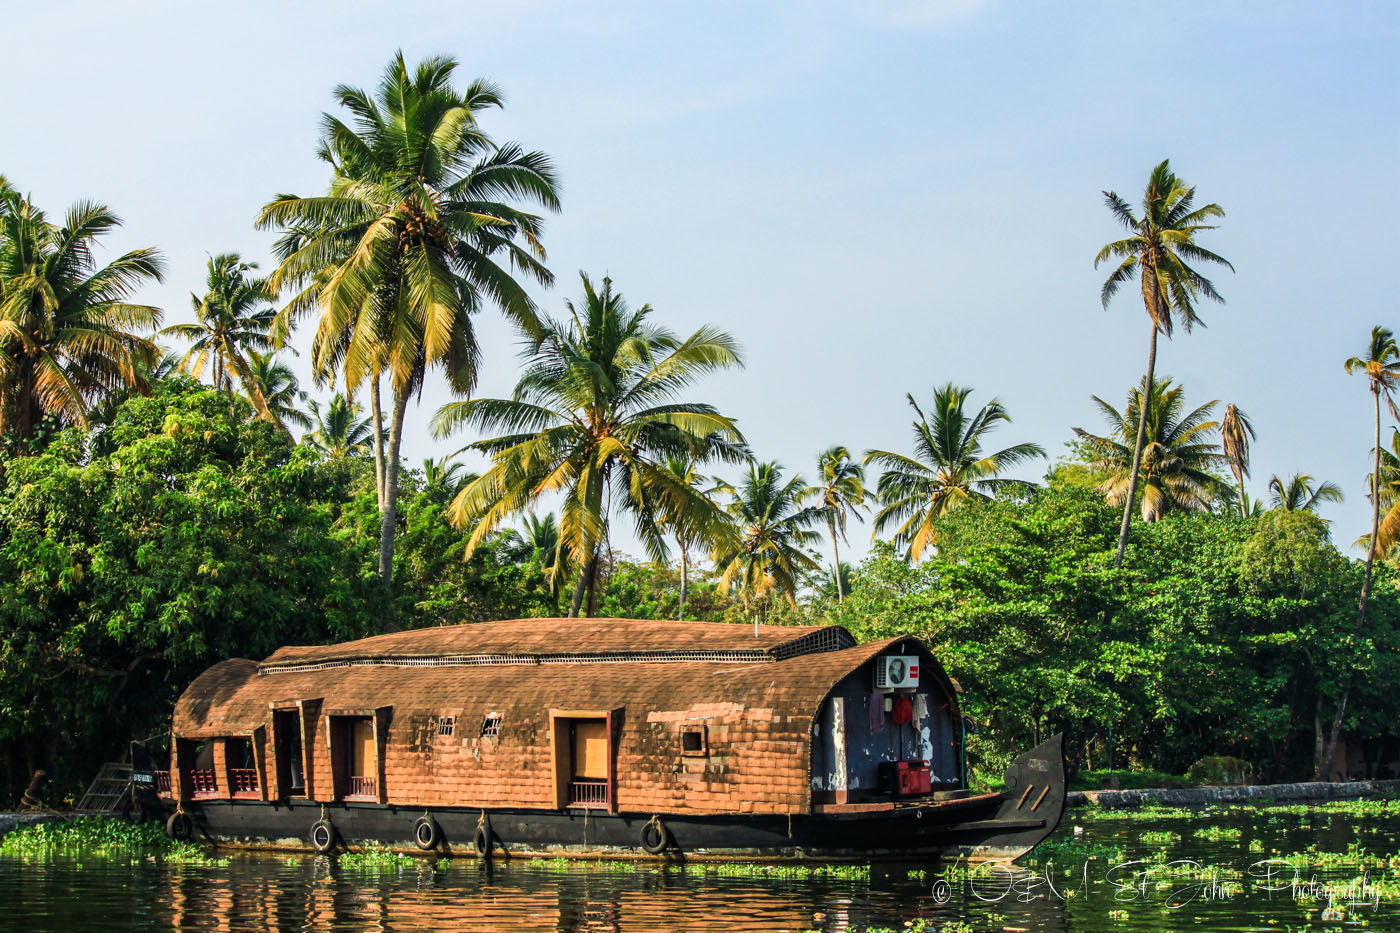 Kettuvallams (house boat) in Kerala Backwaters, India